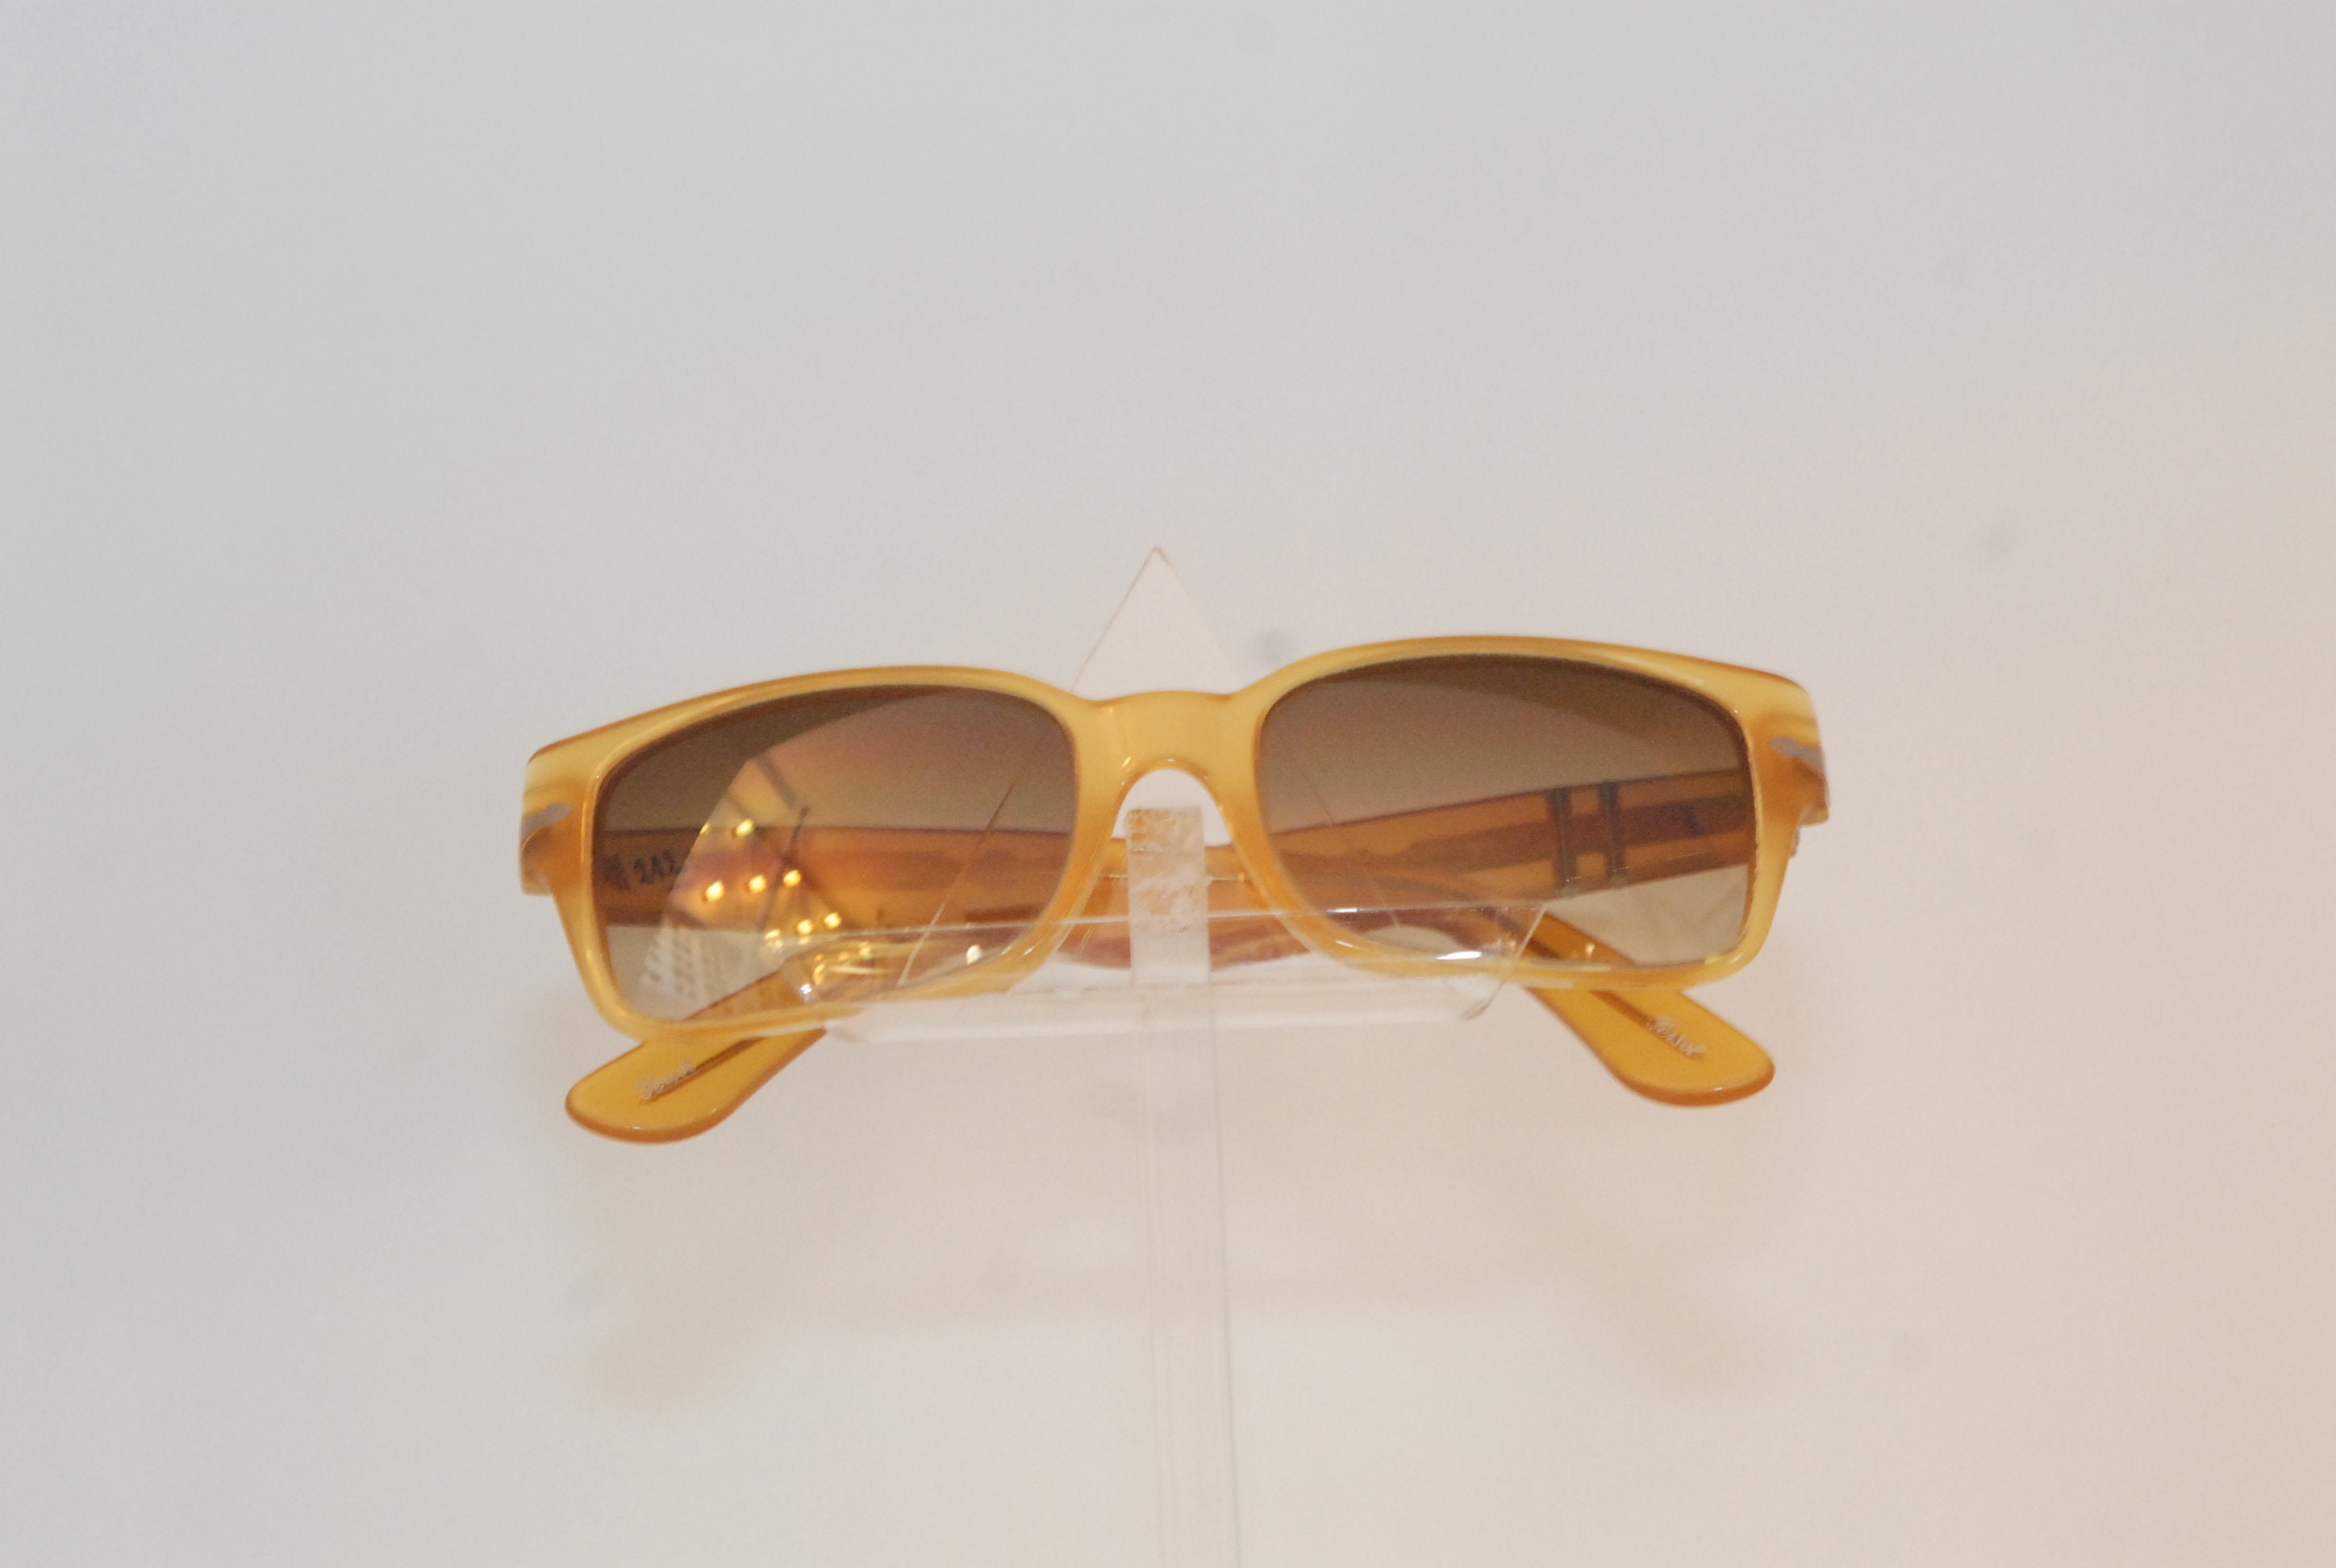 Persol Vintage Sonnenbrille, originaly hergestellt in Italien sonnige gelbe  Celluloseacetat Farbe mit braunen Farblinsen, frischen Pariser Stil -  .de